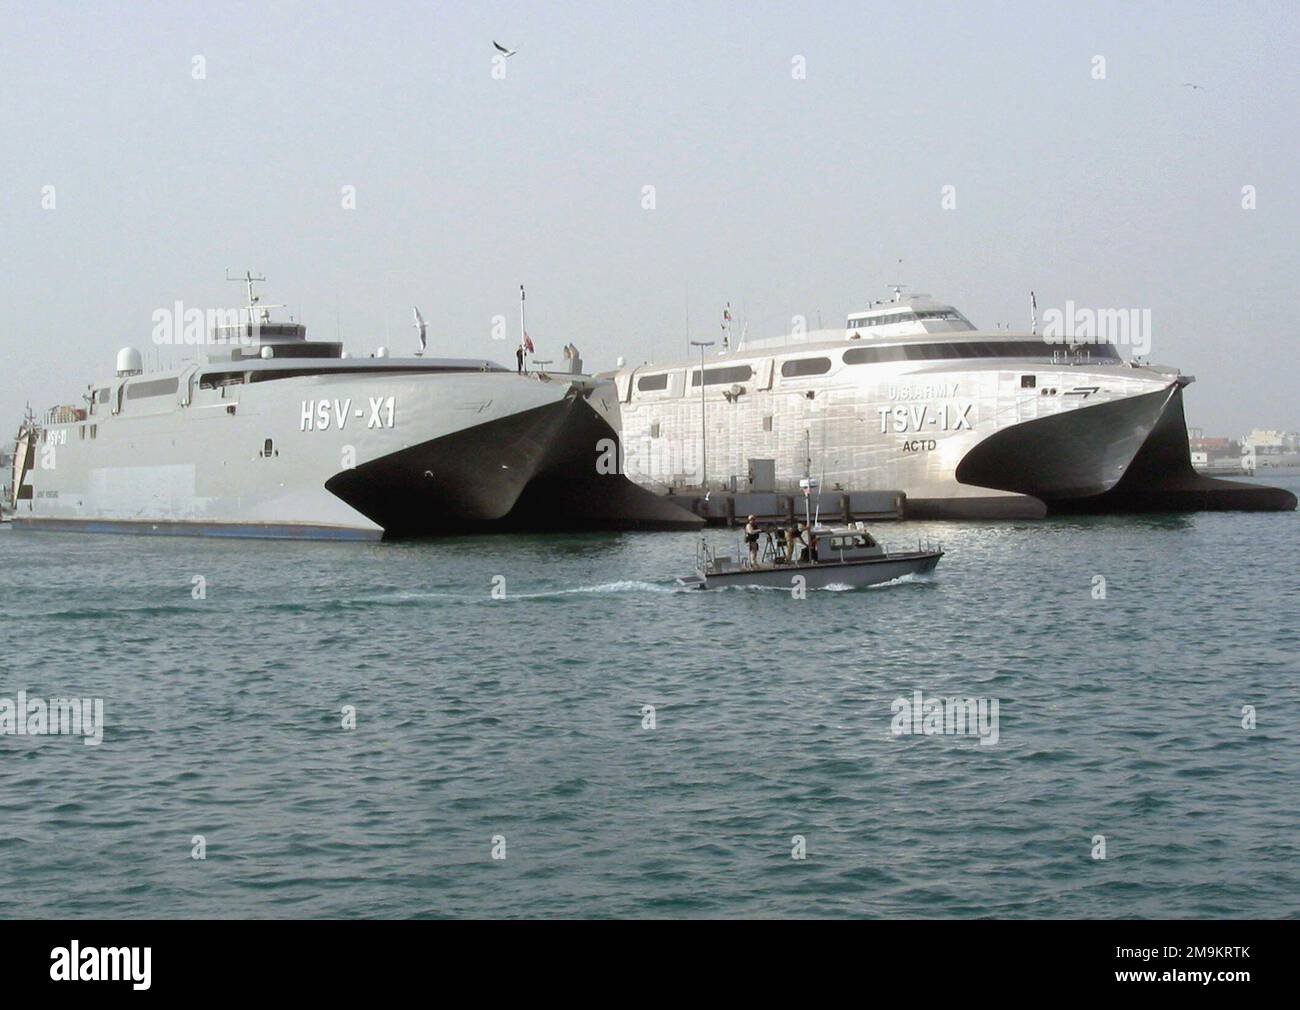 030225-N-1050K-001. [Complete] Scene Caption: I veicoli Sealift appartenenti alla Marina militare statunitense (USN) e all'Esercito statunitense (USA) siedono insieme sotto l'occhio vigile della pattuglia del porto statunitense e del Kuwait. La Joint Venture della Marina (HSV-X1) (a sinistra) e l'Army's Spearhead (TSV-1X) sono catamarani ad alta velocità progettati e costruiti da costruttori navali INCAT Australia. La progettazione di imbarcazioni a servizio congiunto è stata coordinata dal Navys Warfare Development Command in stretta collaborazione con Elements of the USA, USN, US Marine Corps (USMC) e US Coast Guard (USCG). Le navi impressionante velocità può spostare truppe e attrezzature Foto Stock